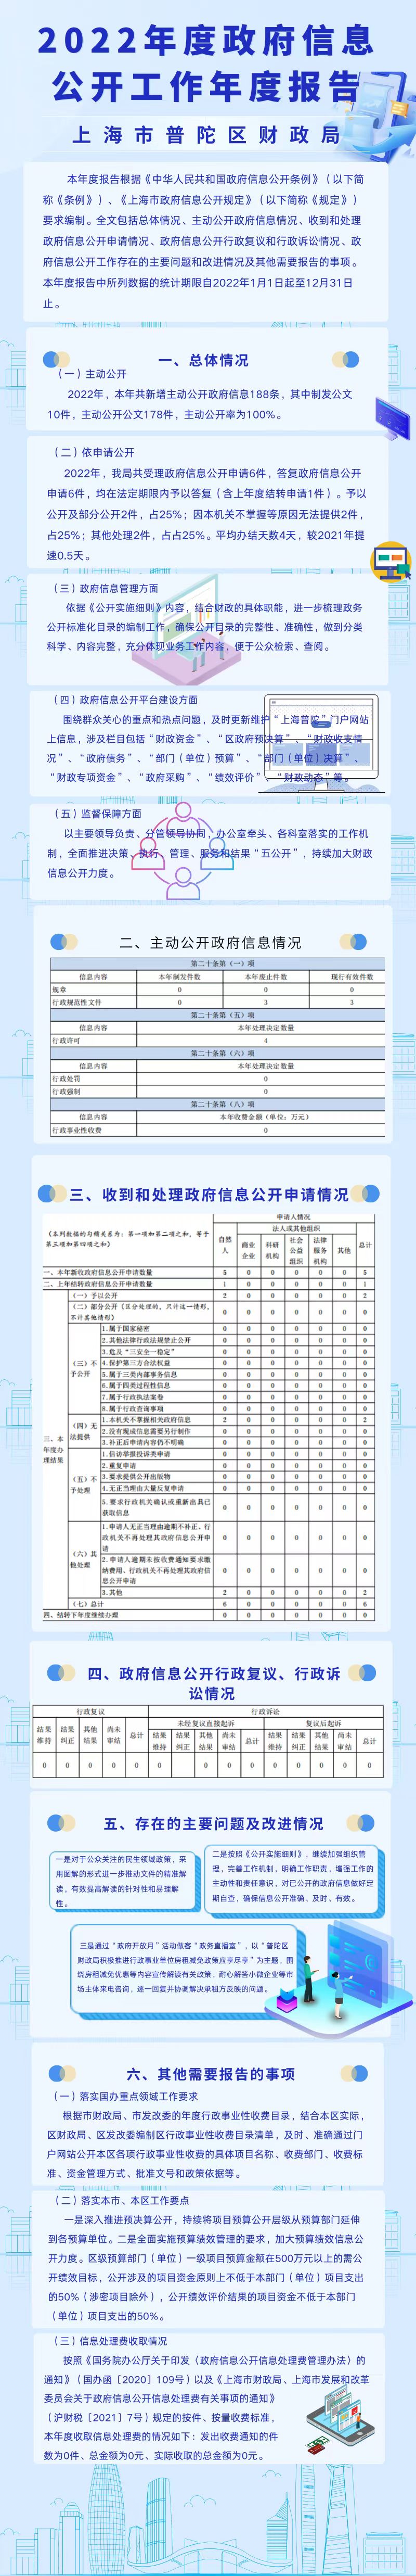 上海市普陀区财政局2022年度政府信息公开工作年度报告.jpg